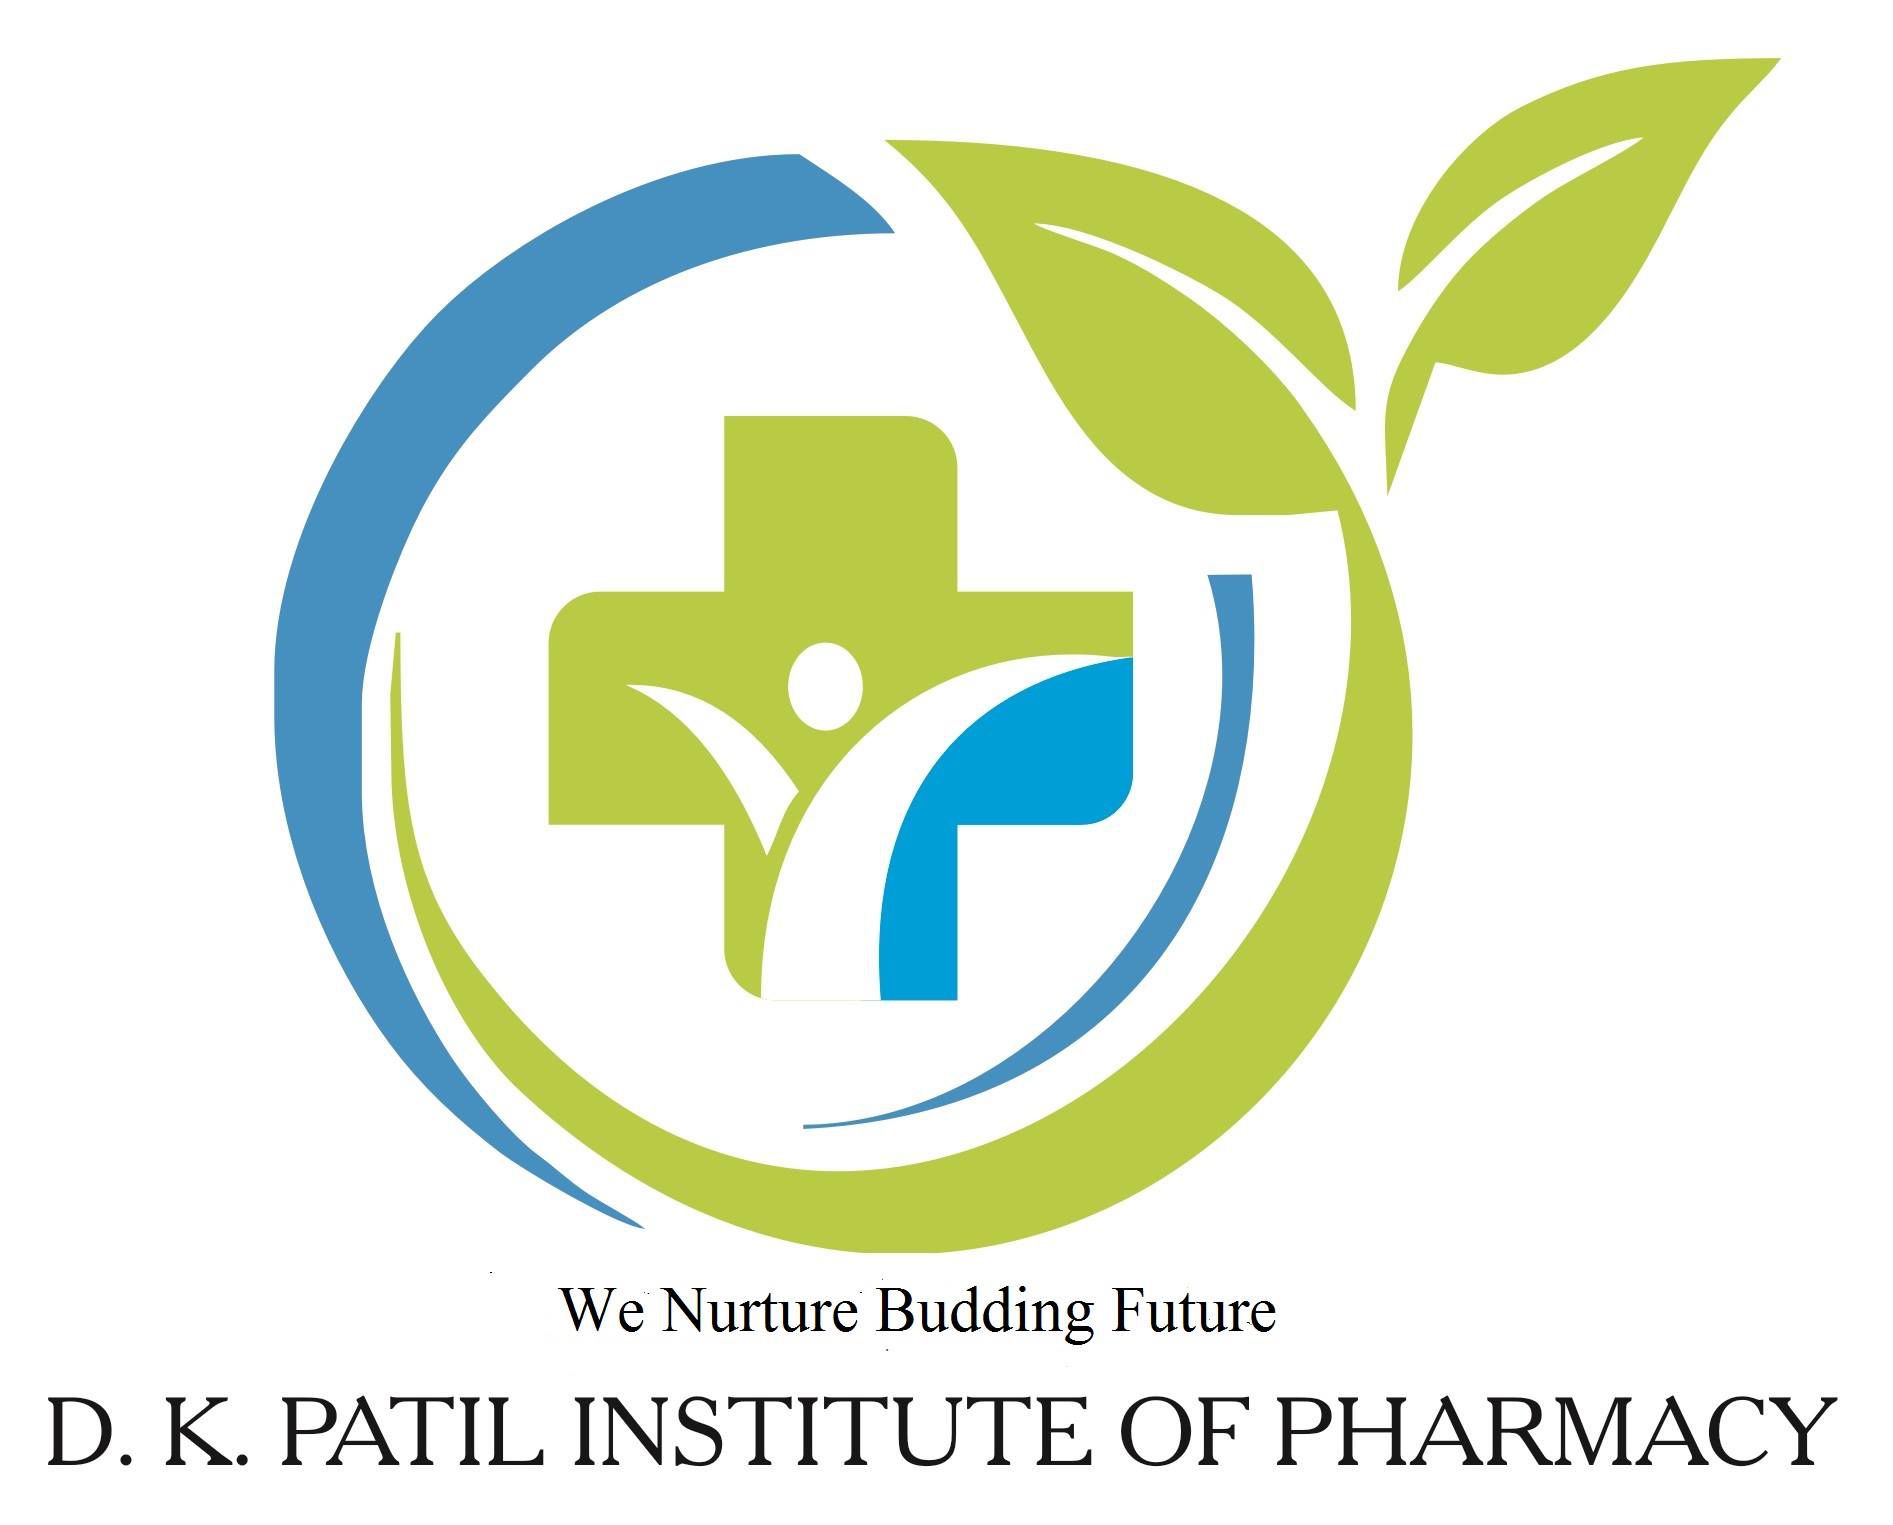 D.K. Patil Institute of Pharmacy